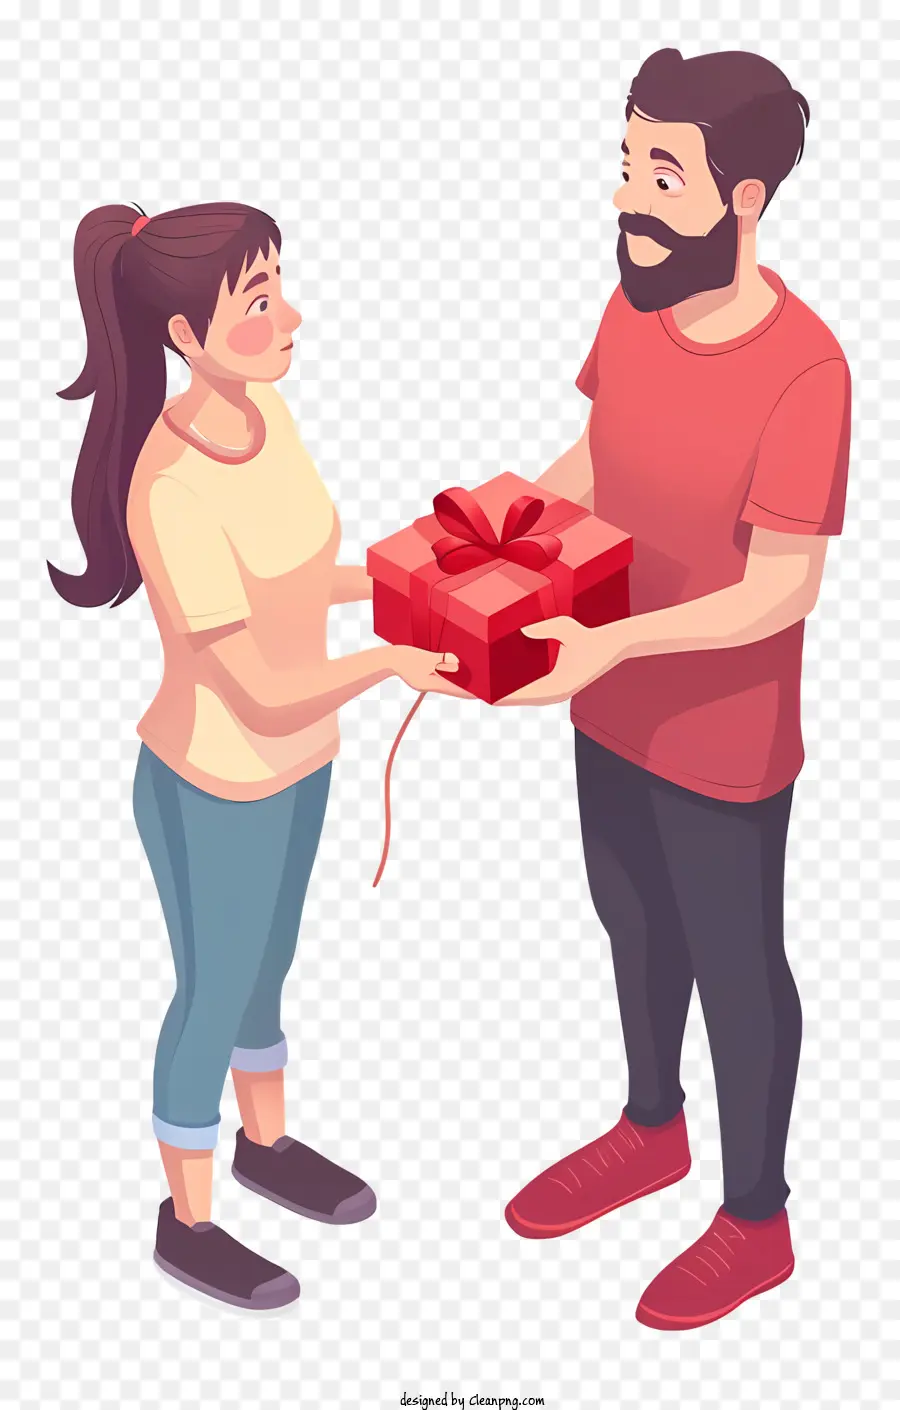 Regalo di San Valentino per il fidanzato Parole chiave pertinenti: Sorpresa regalo Dare Box Red - L'uomo dà una donna rossa; 
entrambi felici. 
Immagine di alta qualità e ben fatta